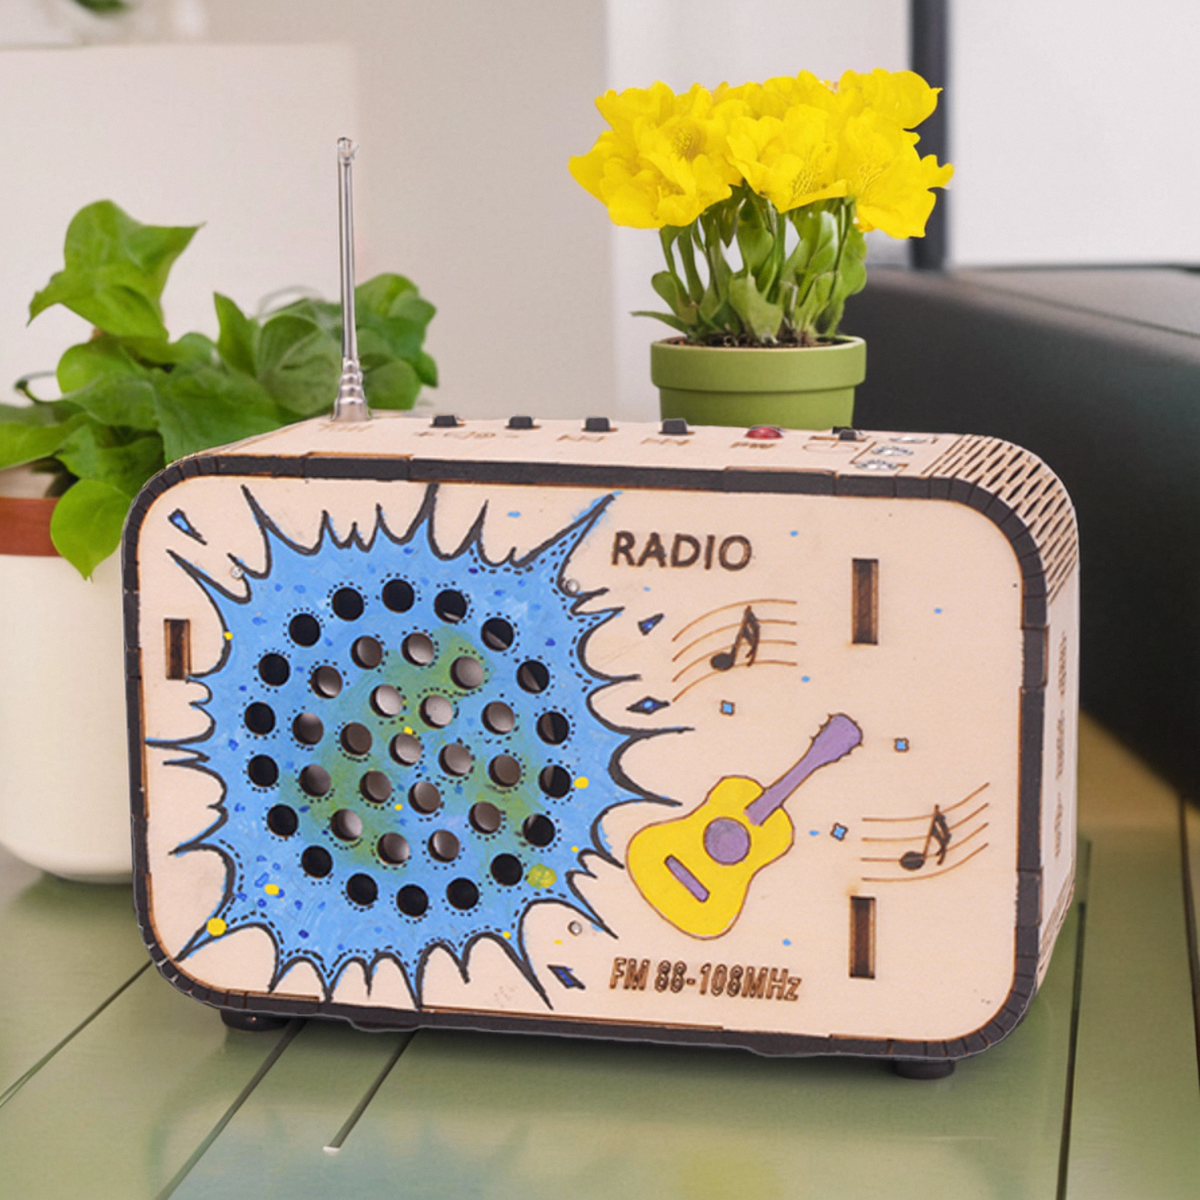 科技小制作自制模型DIY收音机创意小发明学生手工拼装玩具材料